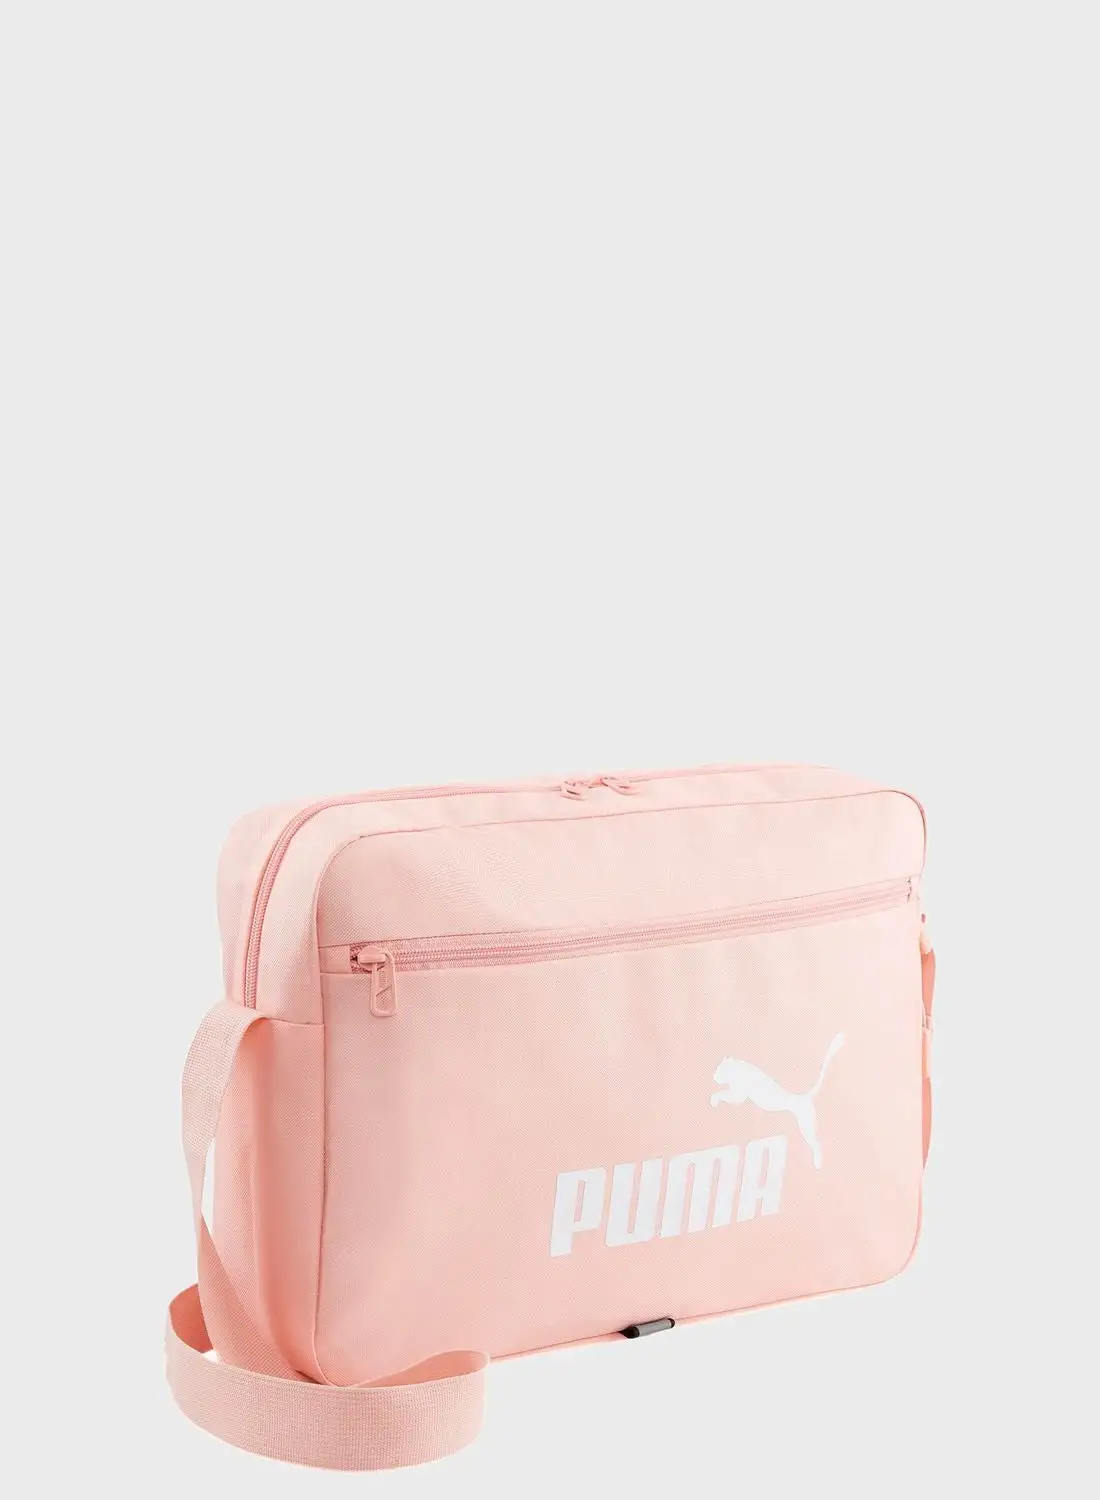 PUMA Phase Shoulder Bag